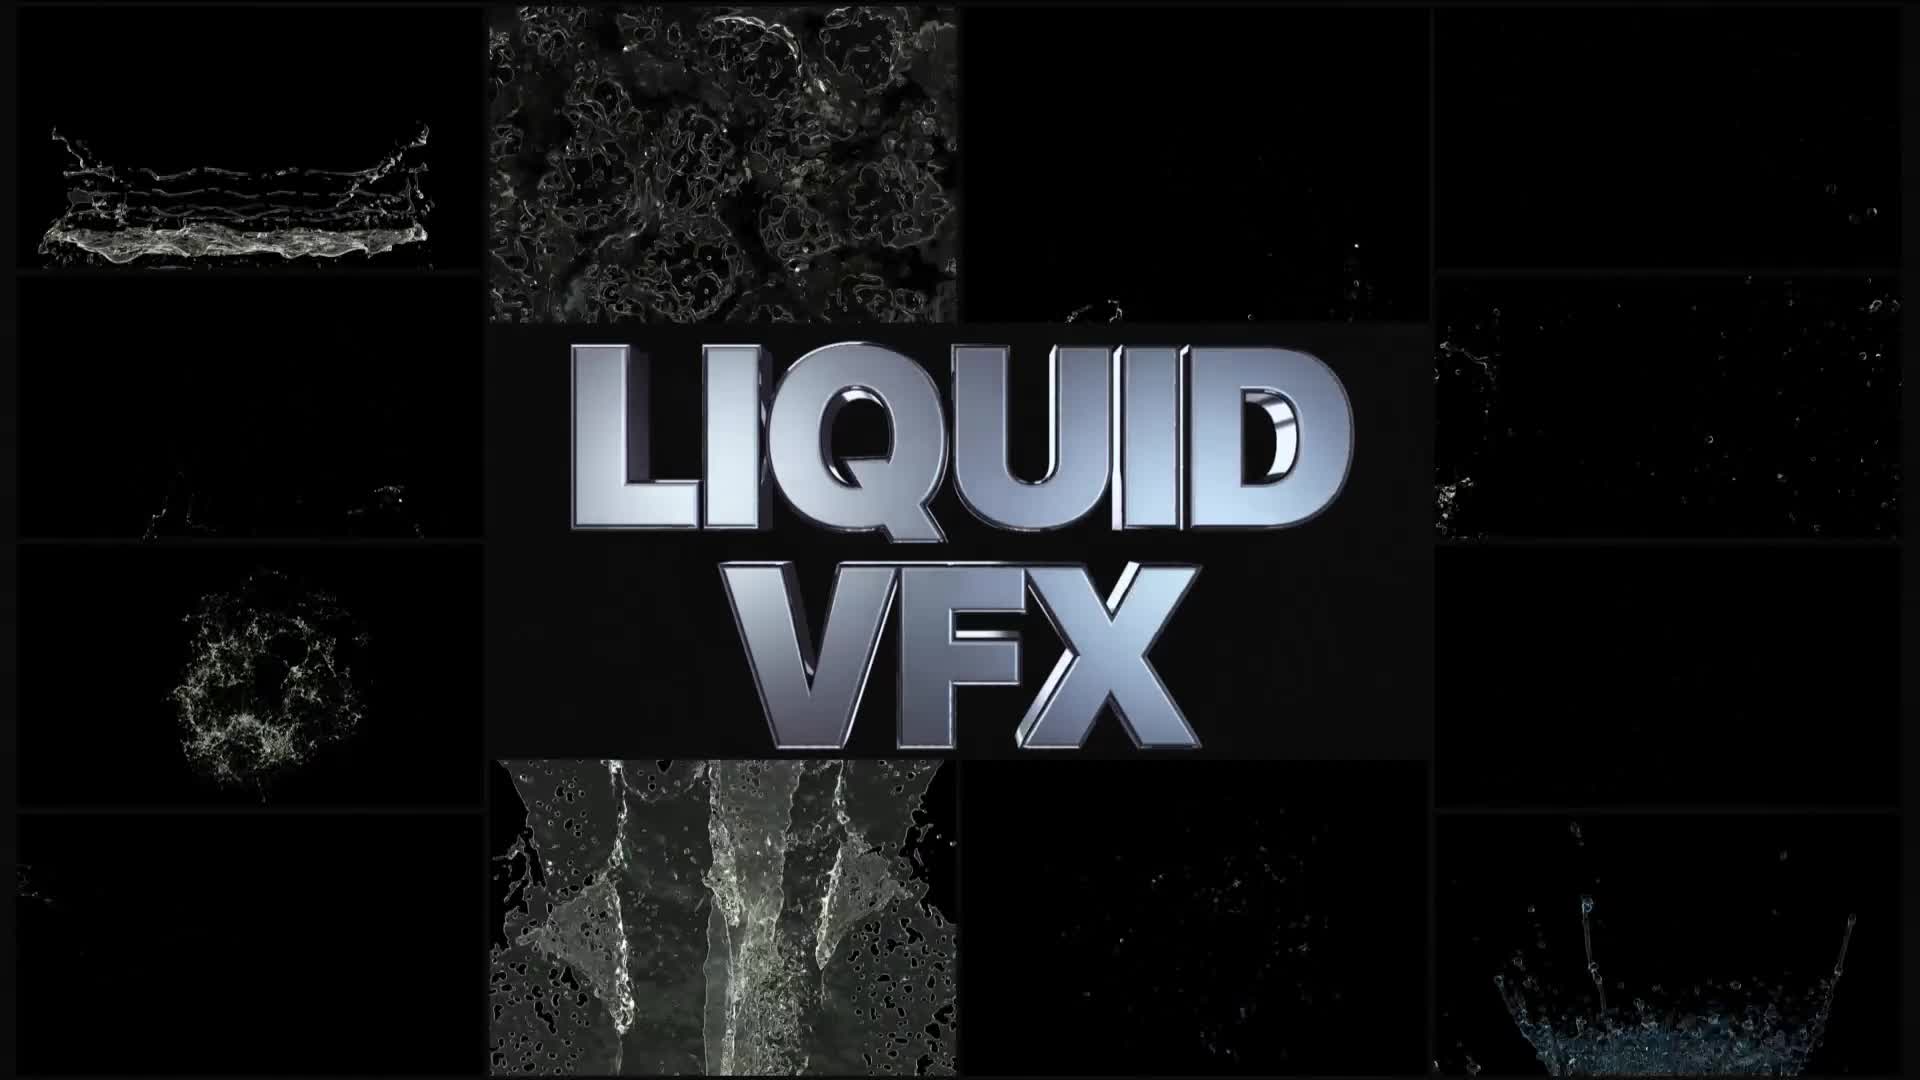 VFX Liquid Elements | Premiere Pro MOGRT Videohive 34380639 Premiere Pro Image 1